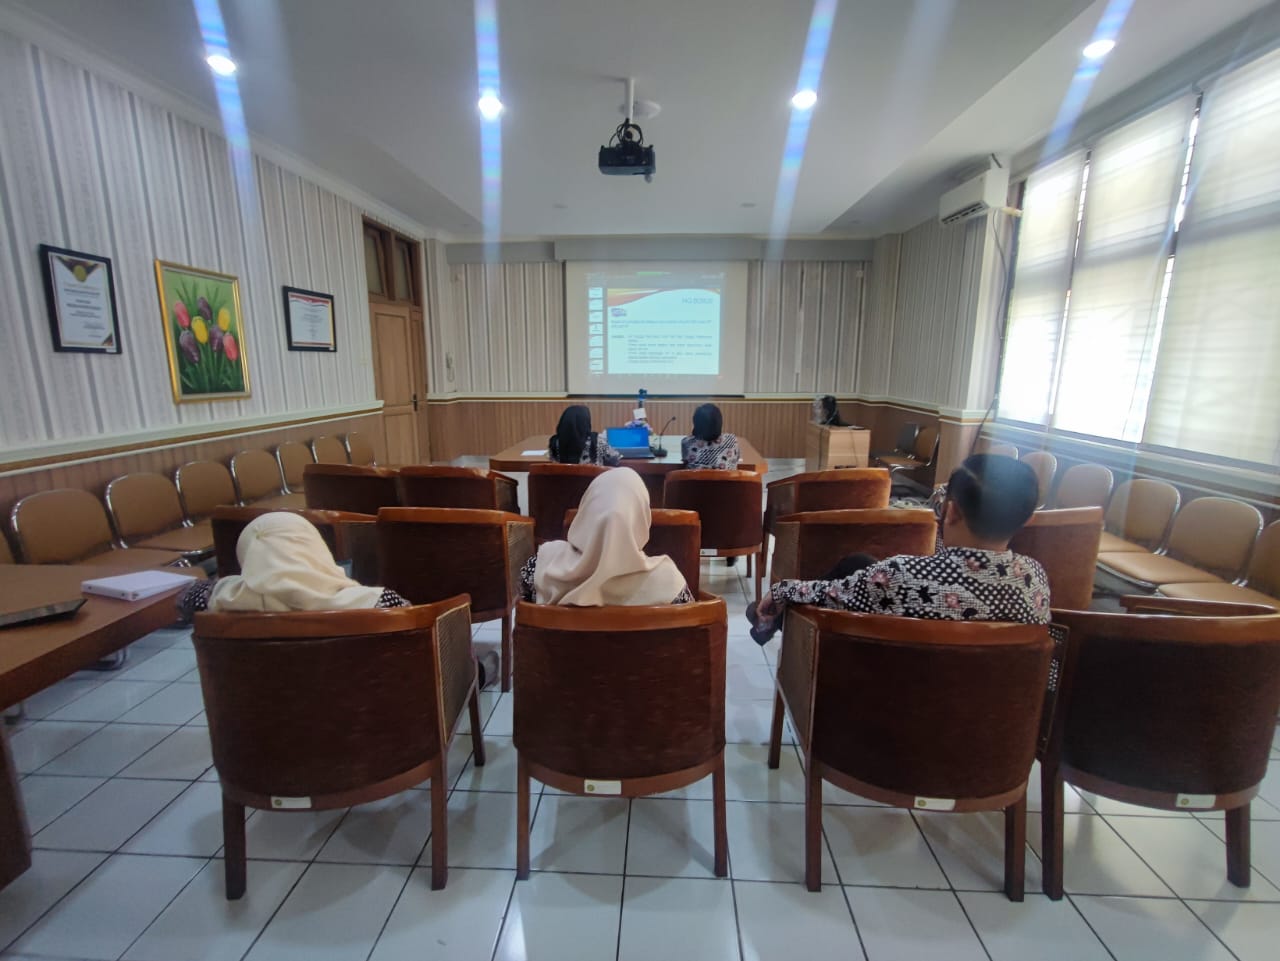 Pengadilan Negeri Yogyakarta Mengikuti Bimtek Administrasi Perkara Pelaksanaan Eksekusi 